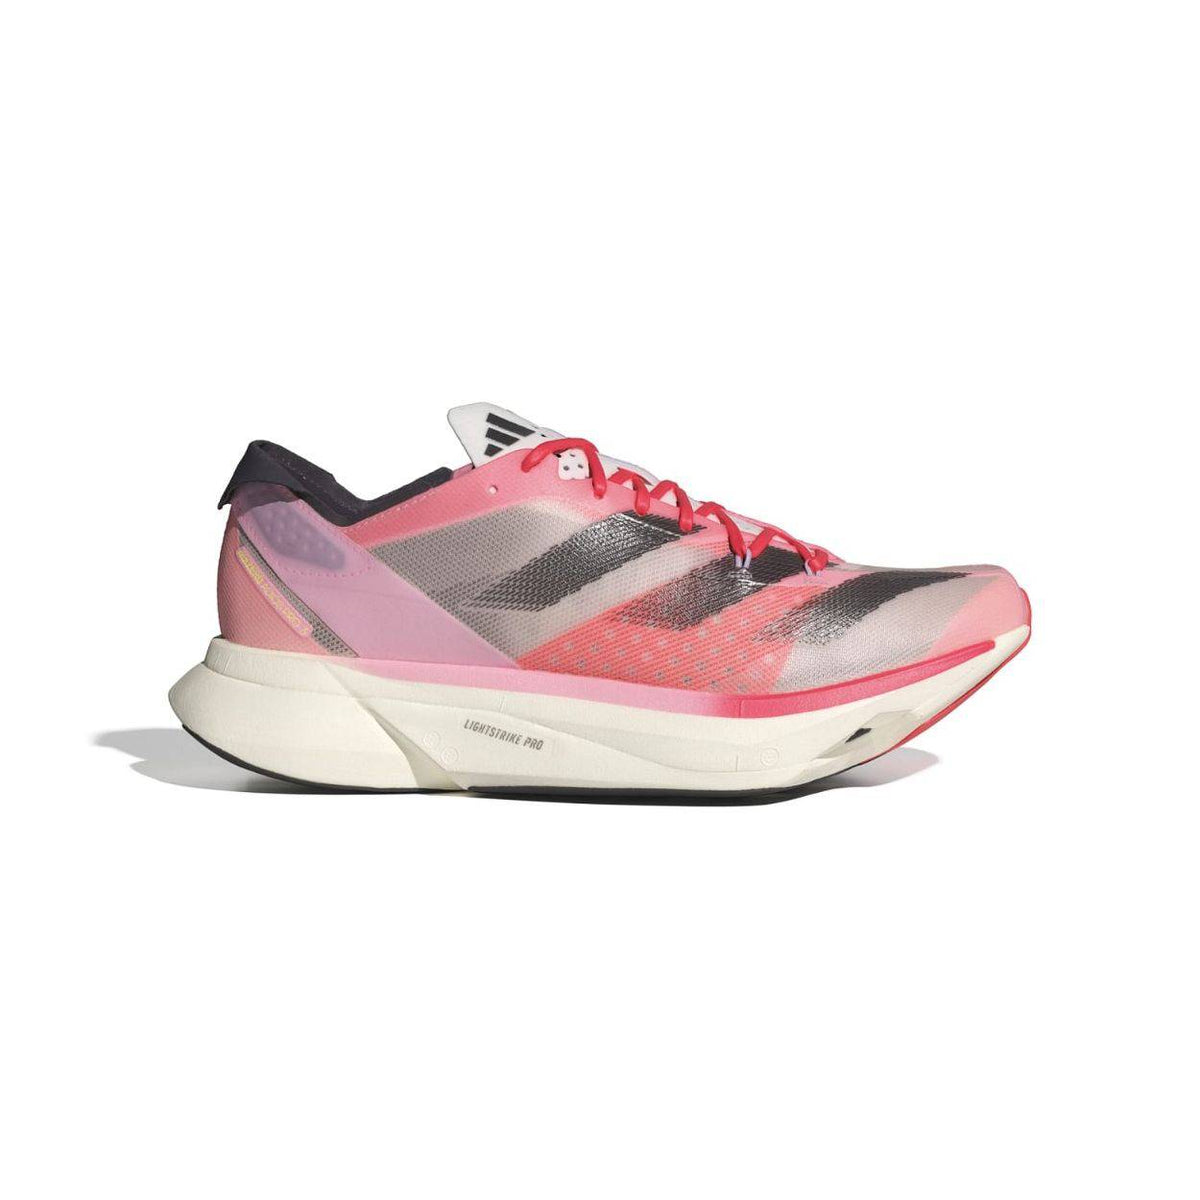 Adidas Adizero Adios Pro 3 Mens FOOTWEAR - Mens Carbon Plate PINSPA / AURMET / SANPIN